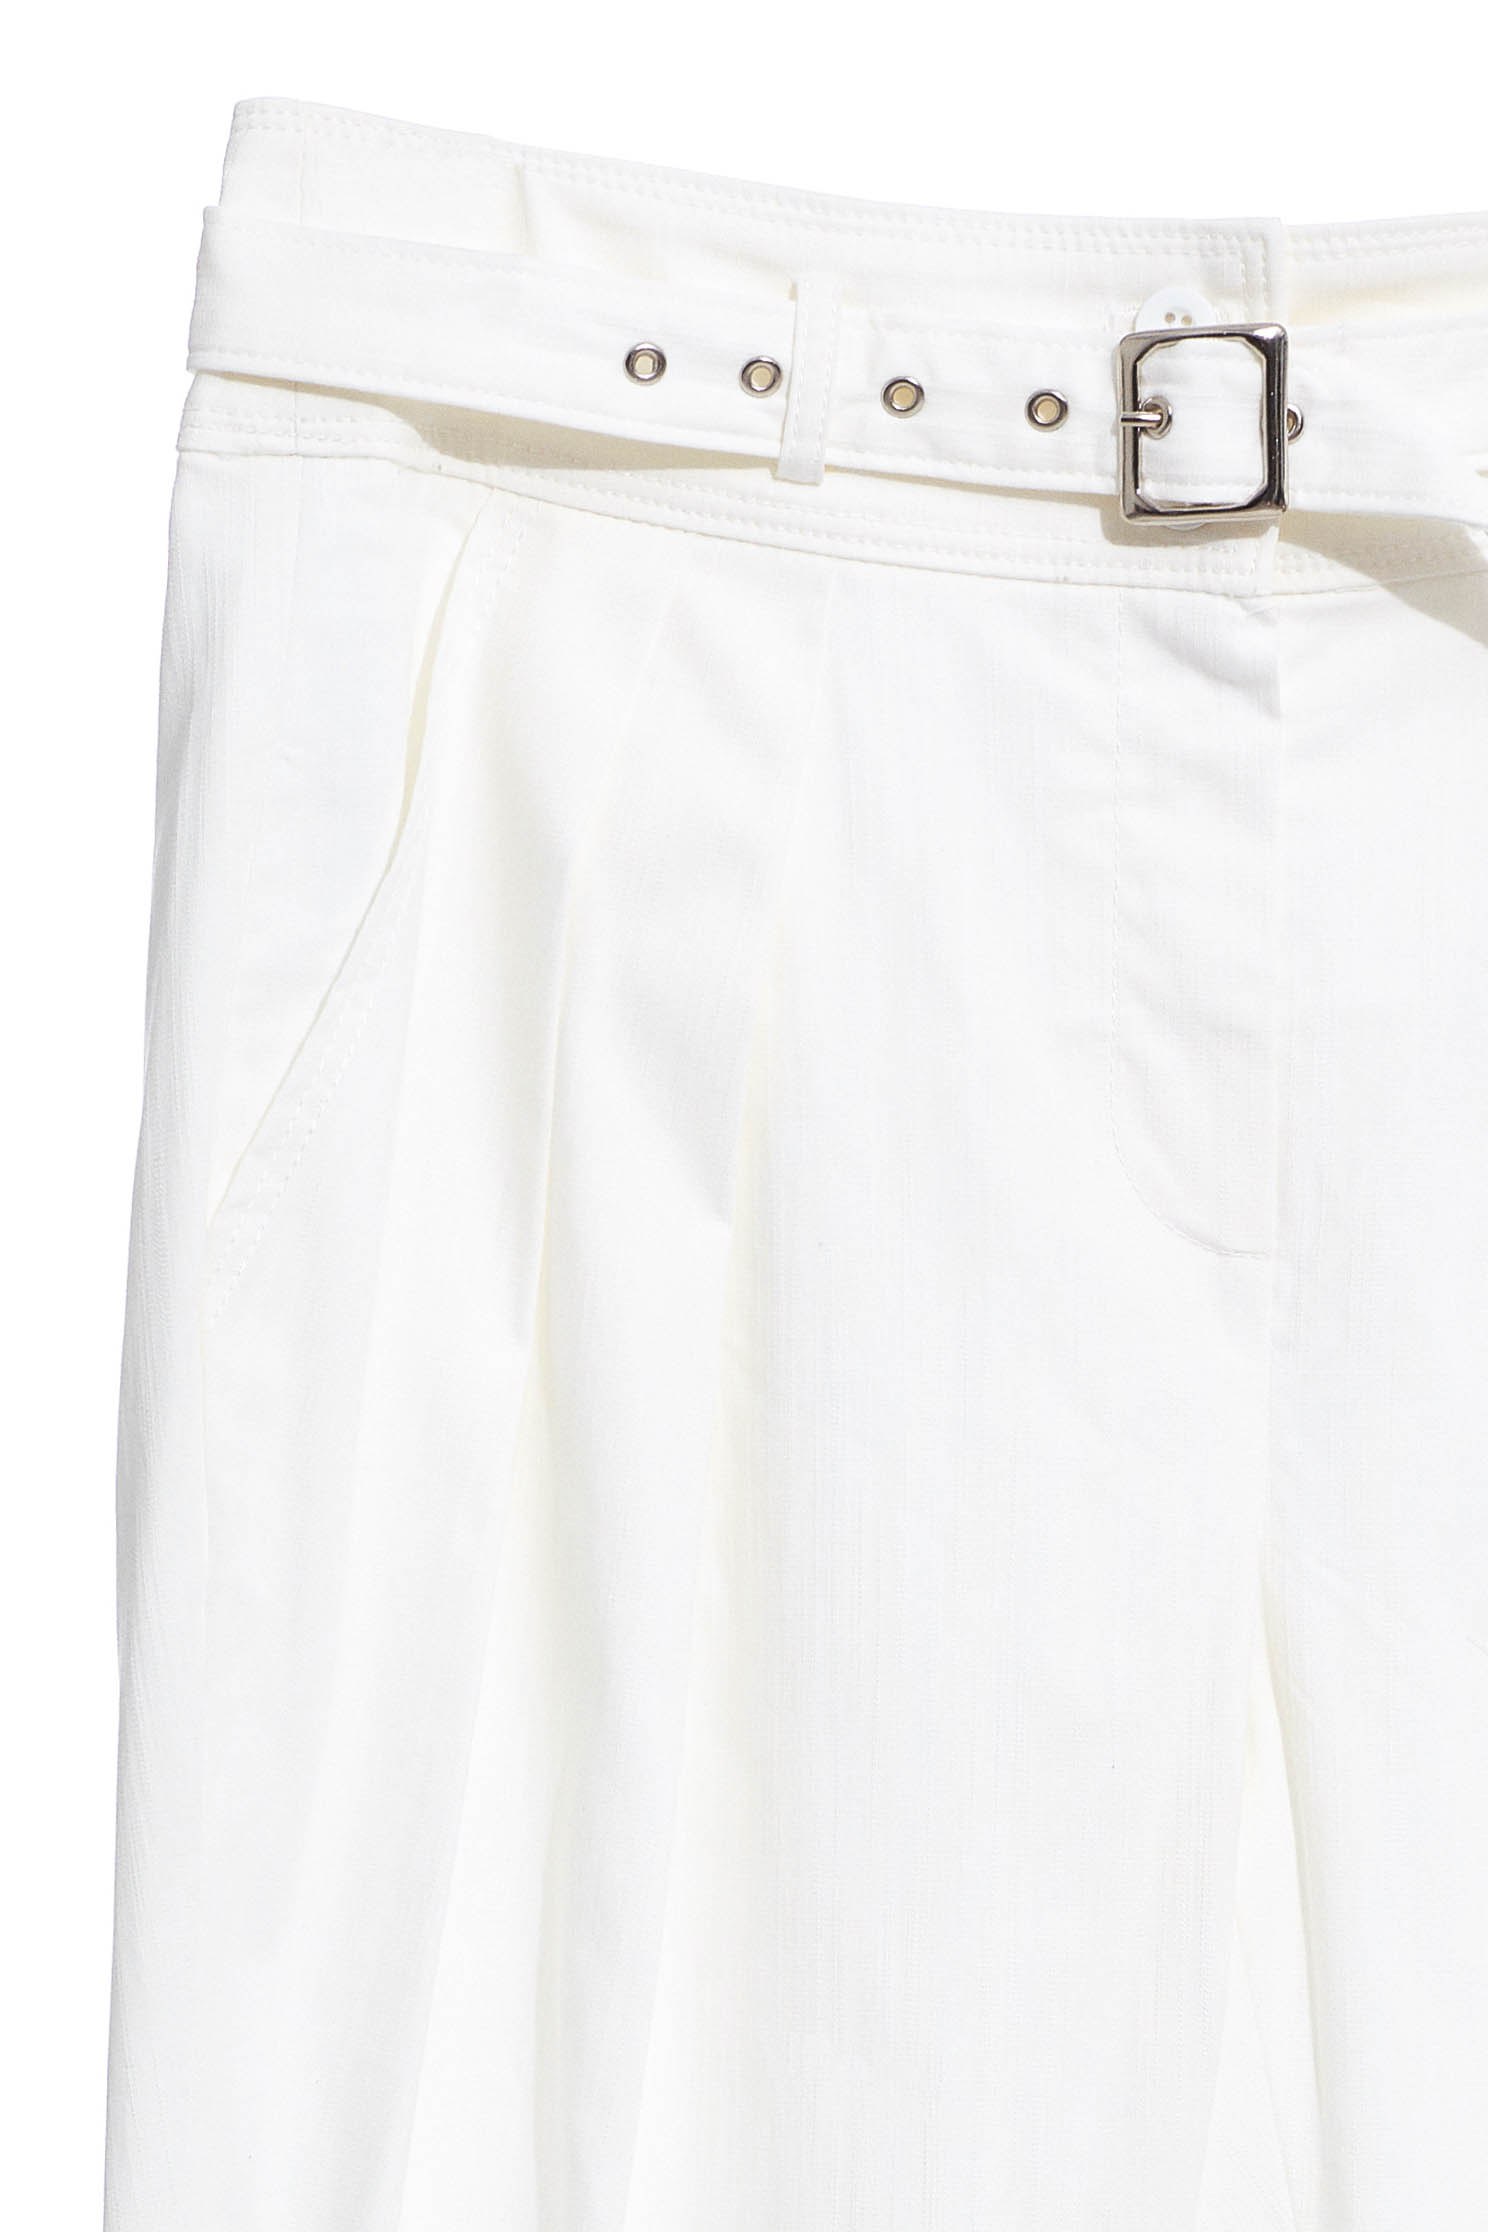 白色打折腰帶女人設計長褲白色打折腰帶女人設計長褲,春夏穿搭,白色褲子,長褲